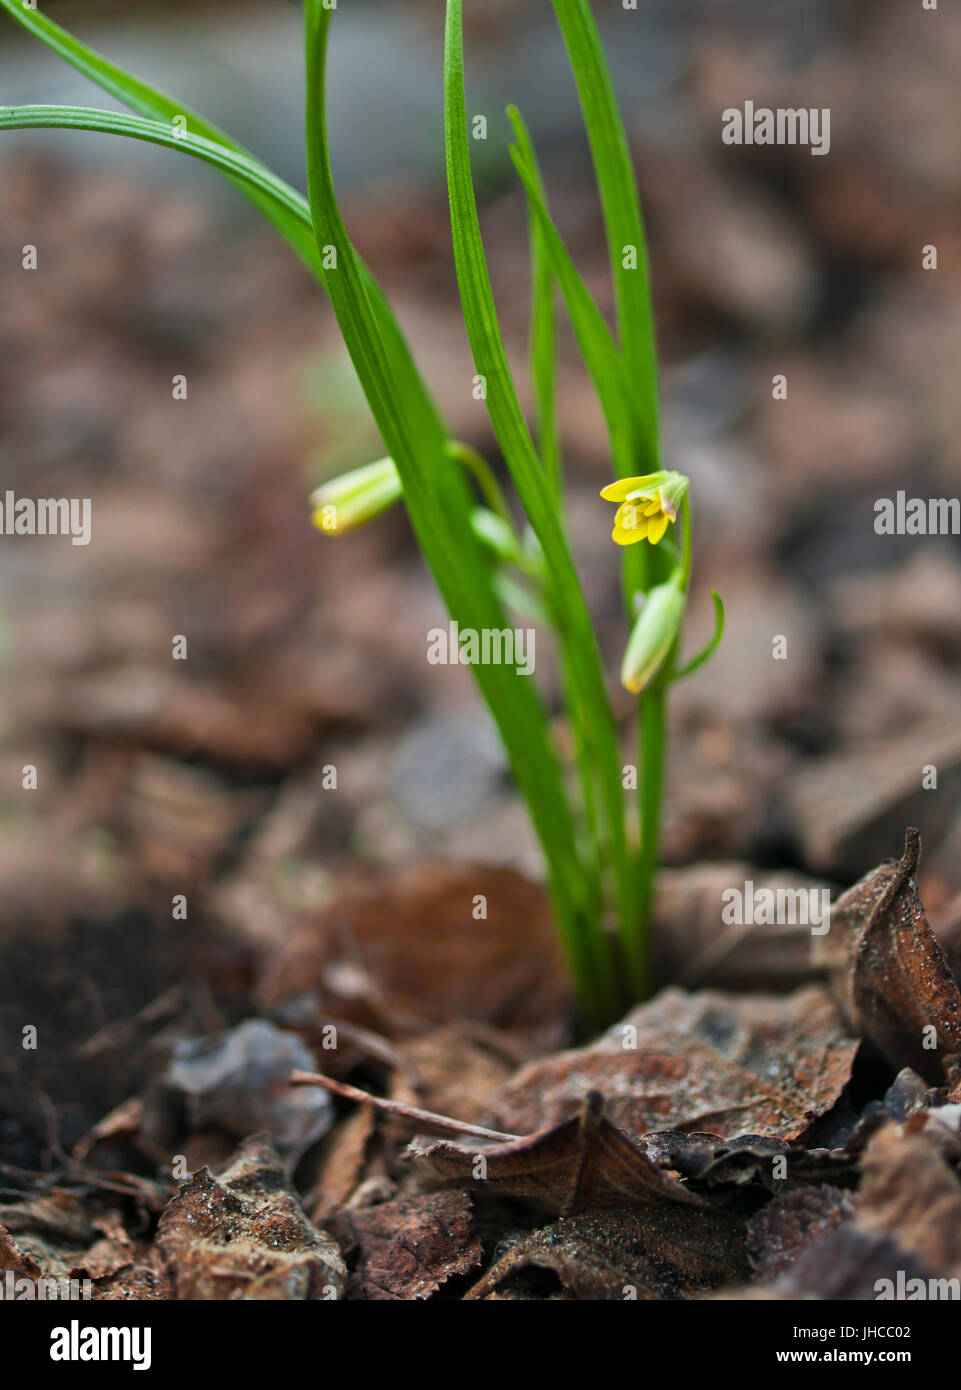 ersten Frühling Pflanze mit gelben Blüten wachsen unter den getrockneten Blättern Stockfoto